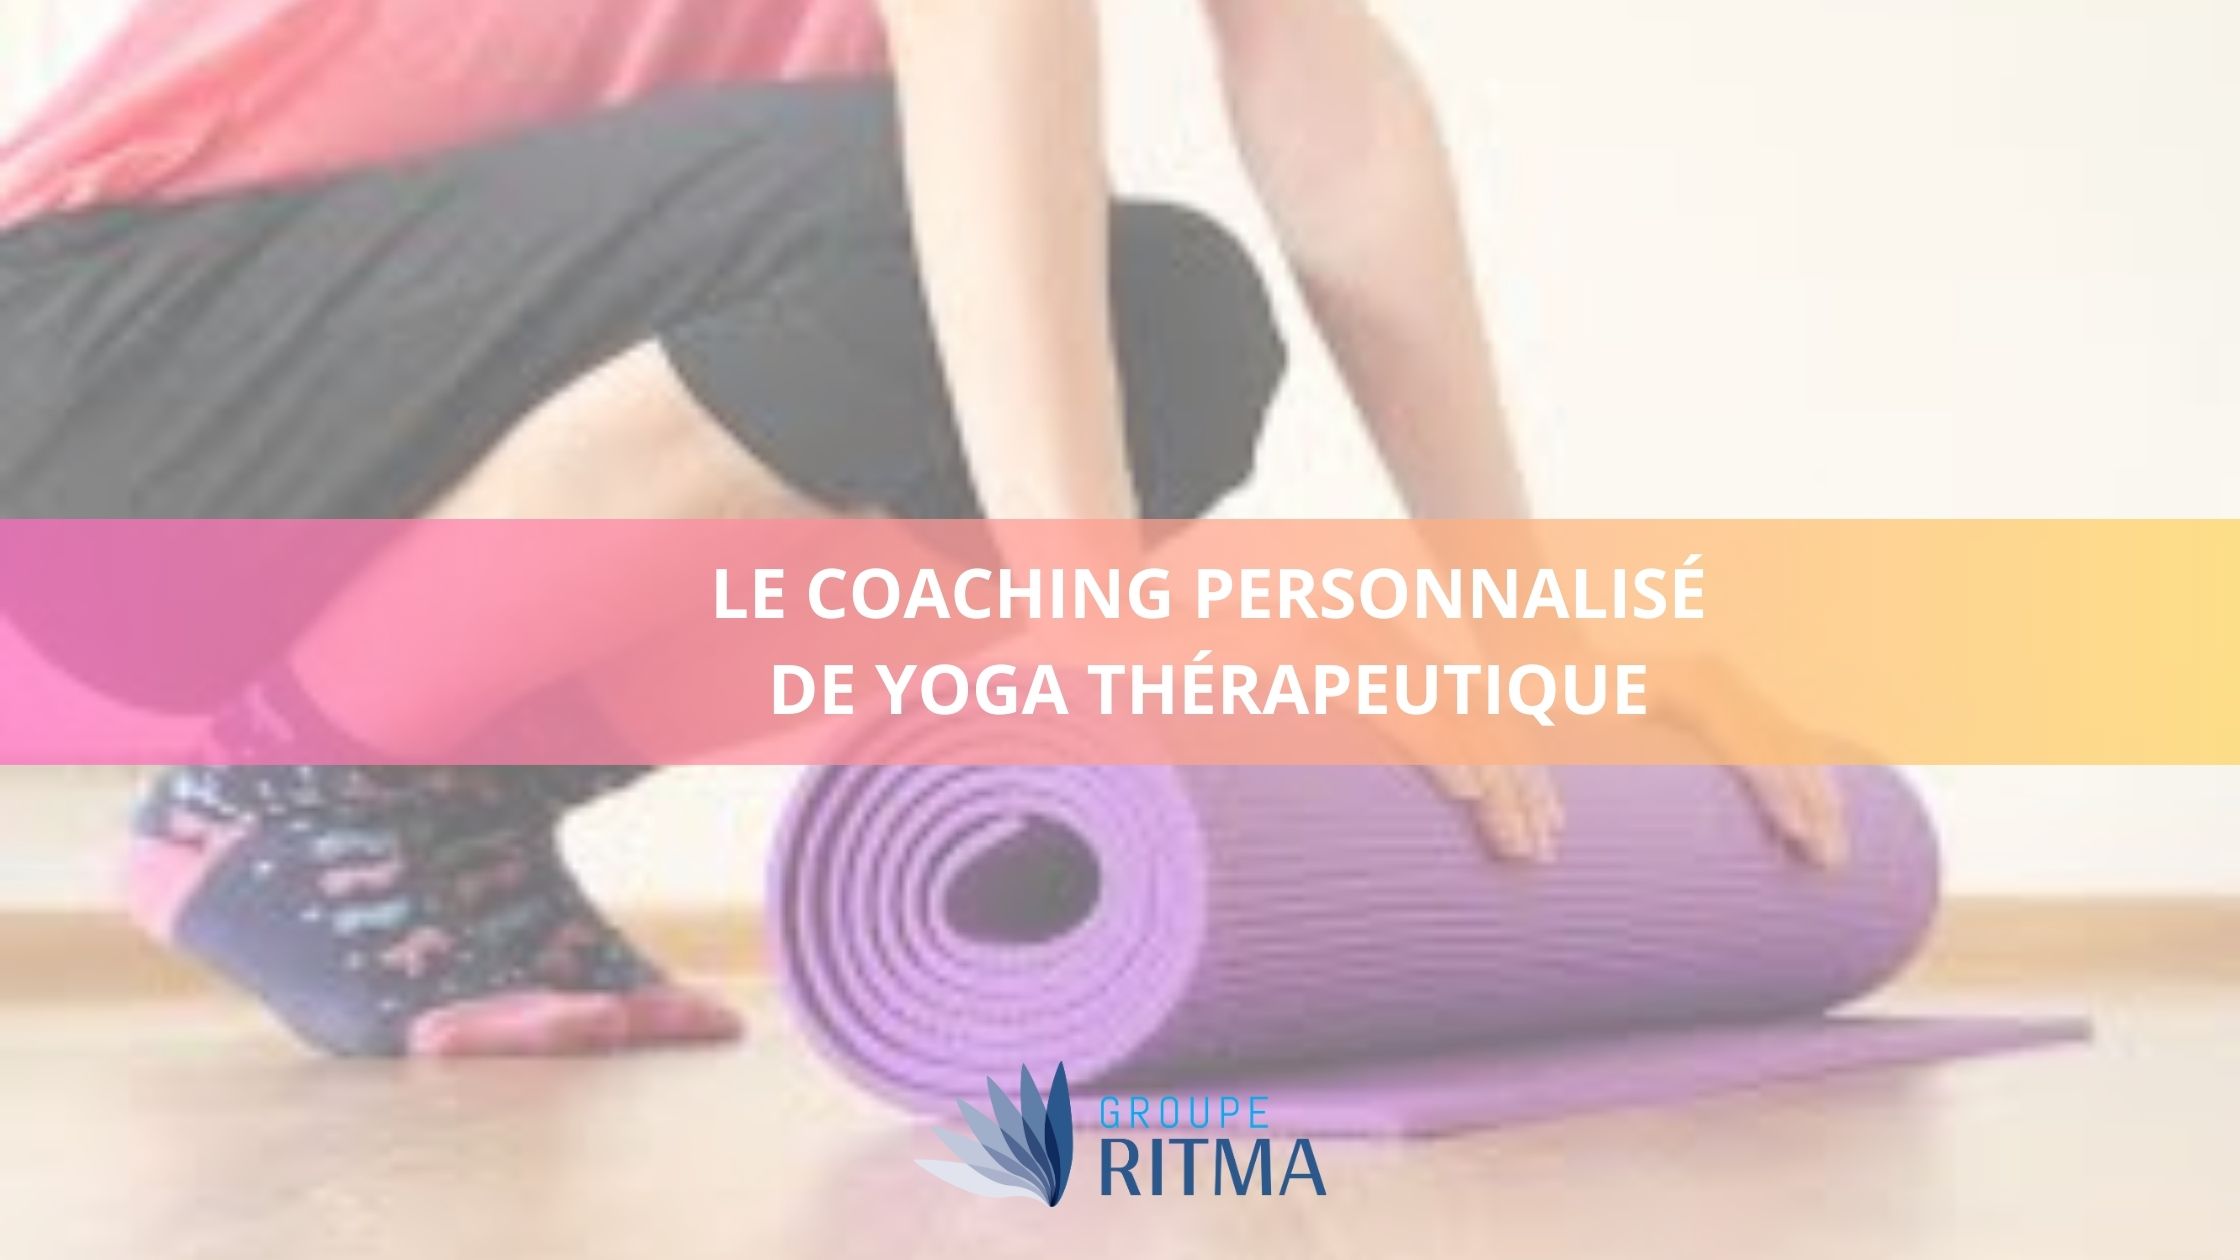 Le coaching personnalisé de yoga thérapeutique